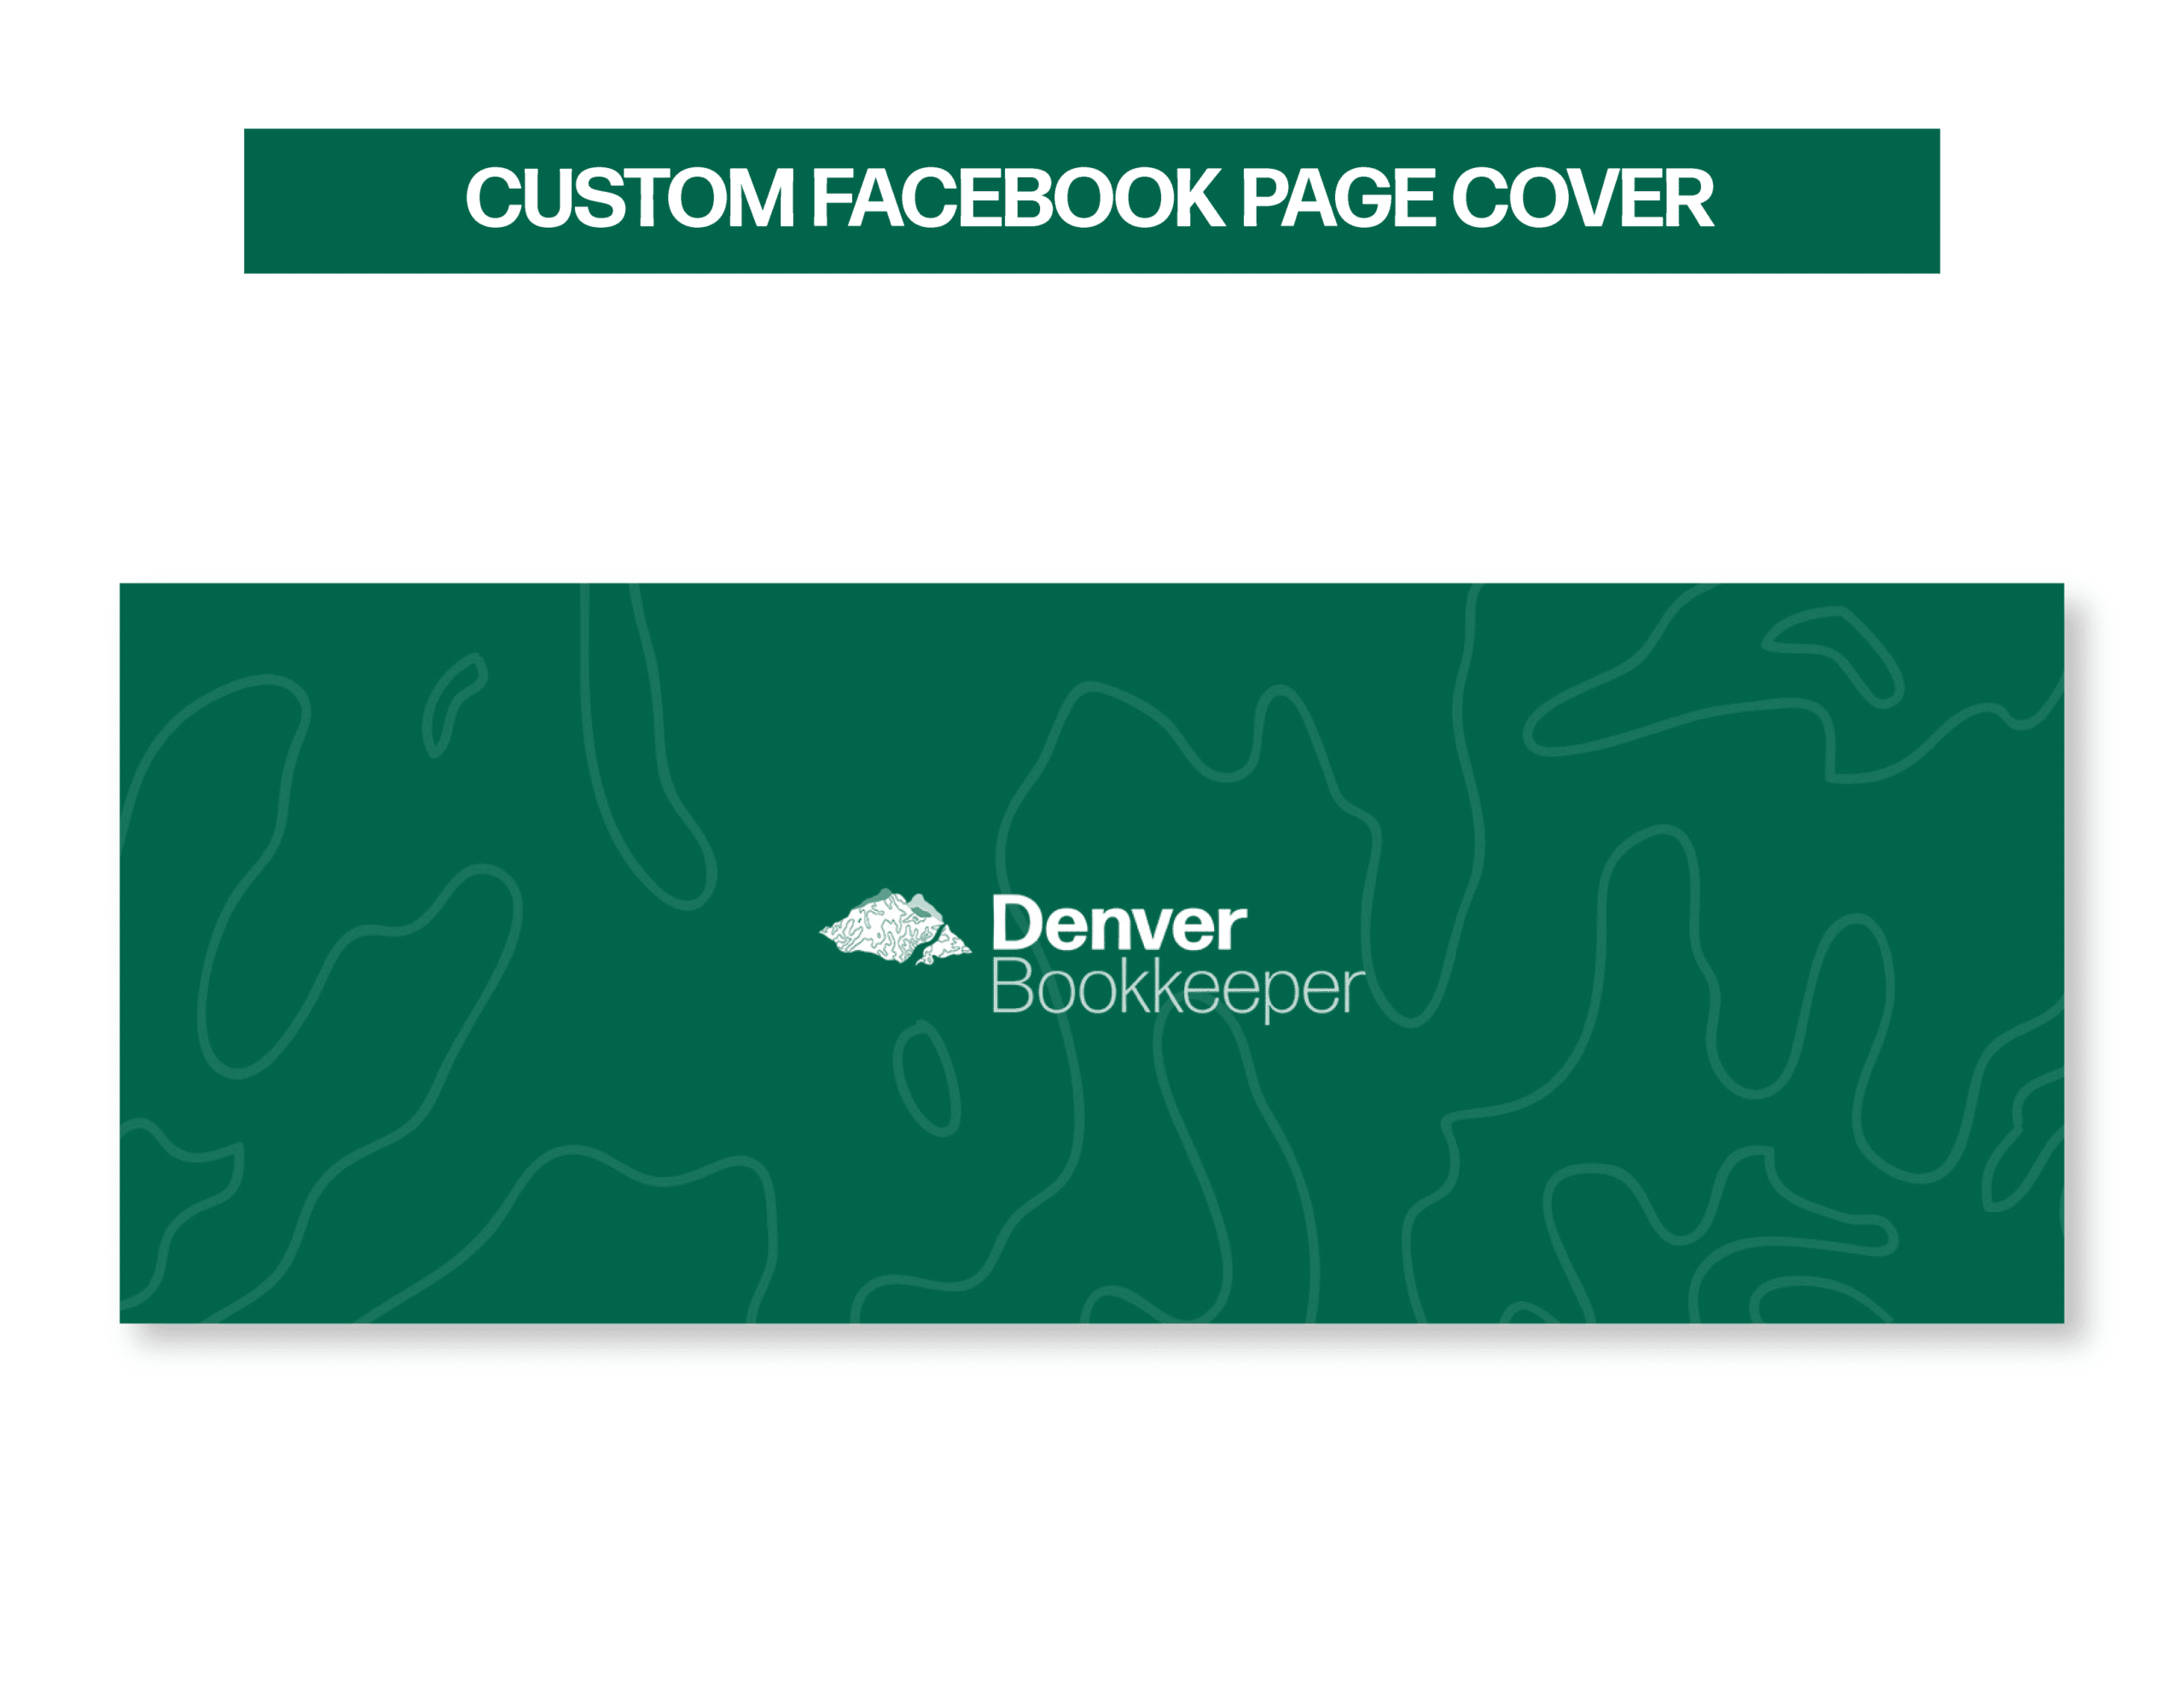 06Denver_Showcase_Custom Facebook Page Cover